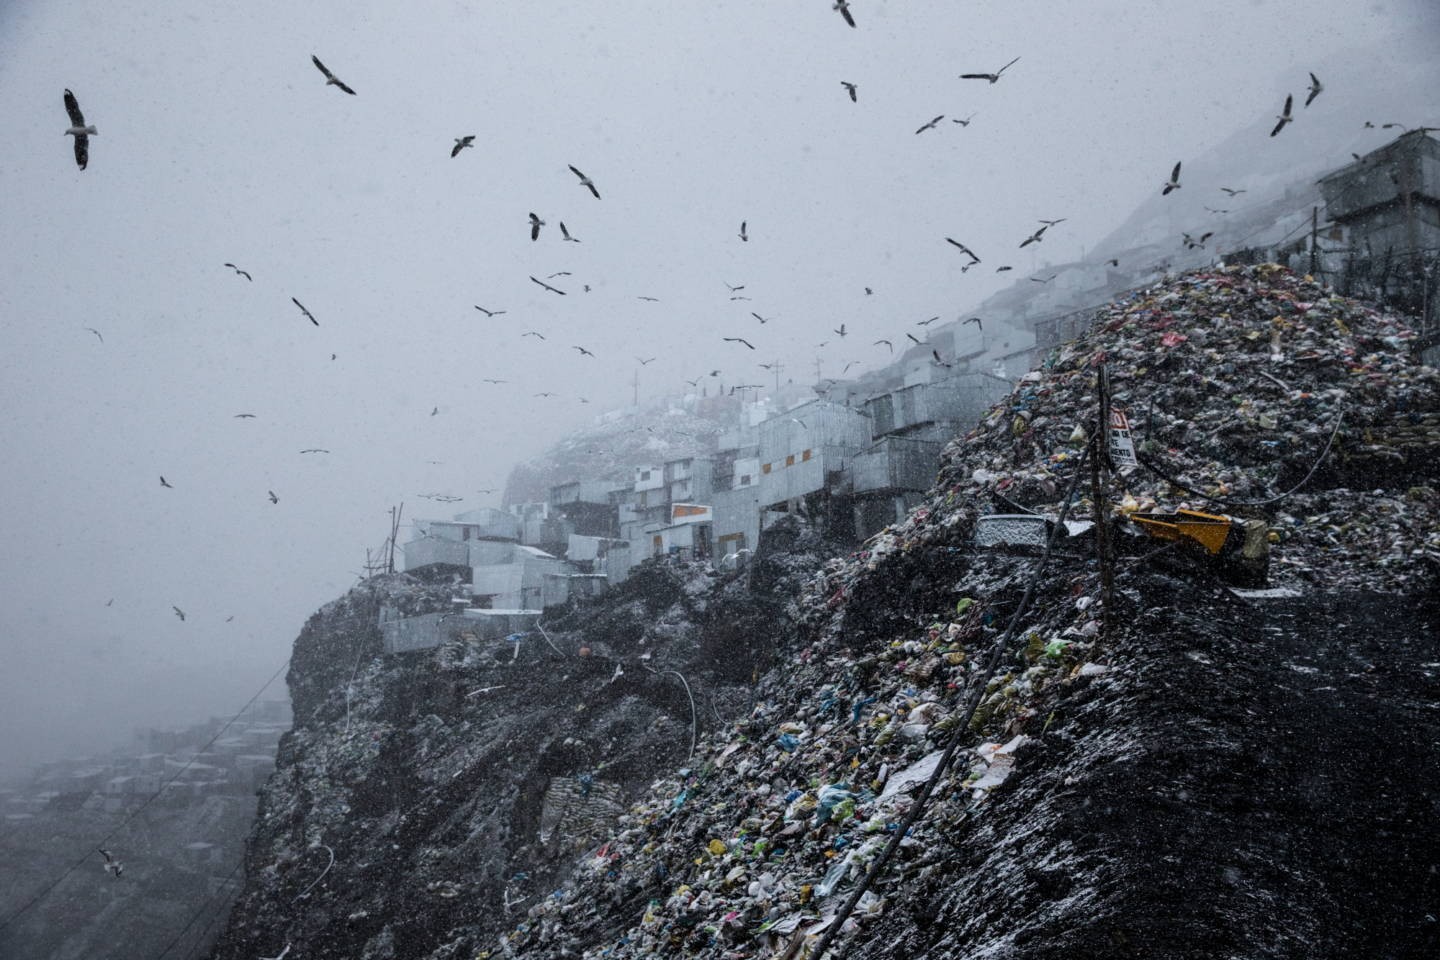 Город Ла-Ринконада, Перу, высочайший населённый пункт на Земле. Расположен в Андах на высоте около 5100 м над уровнем моря. Фотограф Паскаль Мэтр